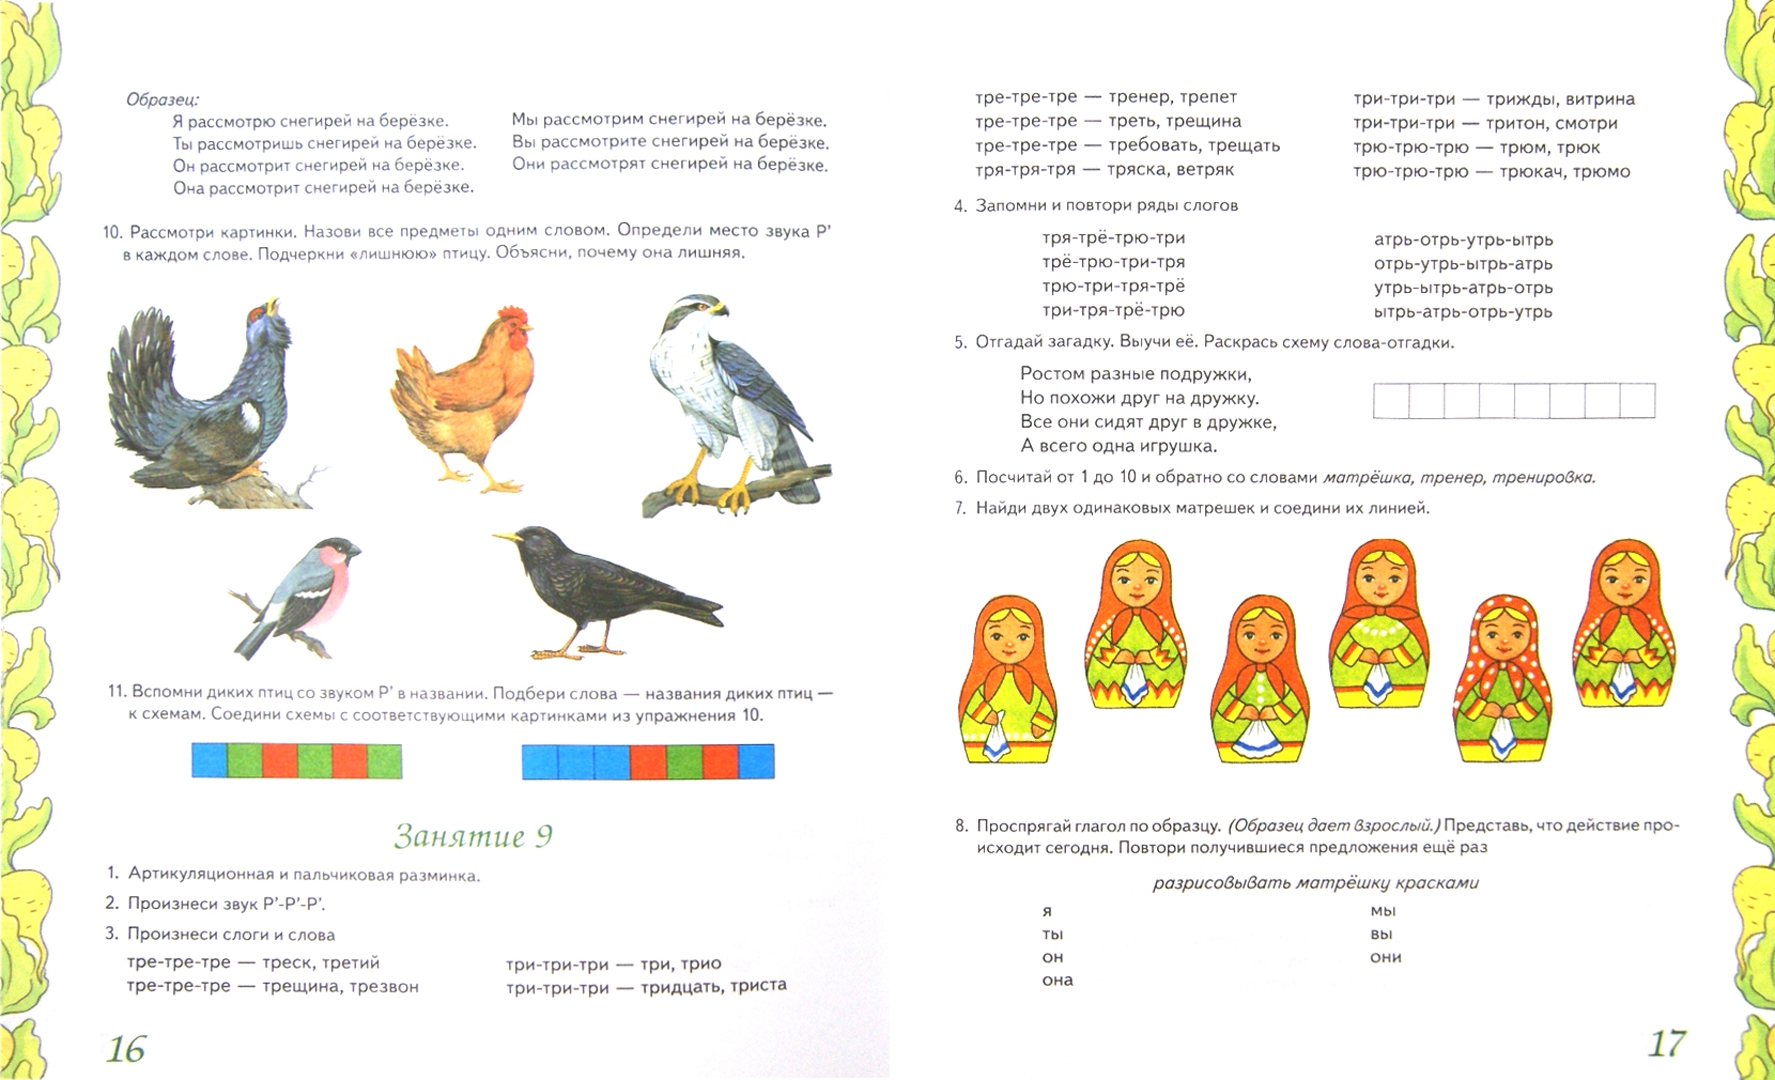 Иллюстрация 1 из 12 для Домашняя тетрадь № 8 для закрепления произношения звука Р' у детей 5-7 лет - Коноваленко, Коноваленко | Лабиринт - книги. Источник: Лабиринт